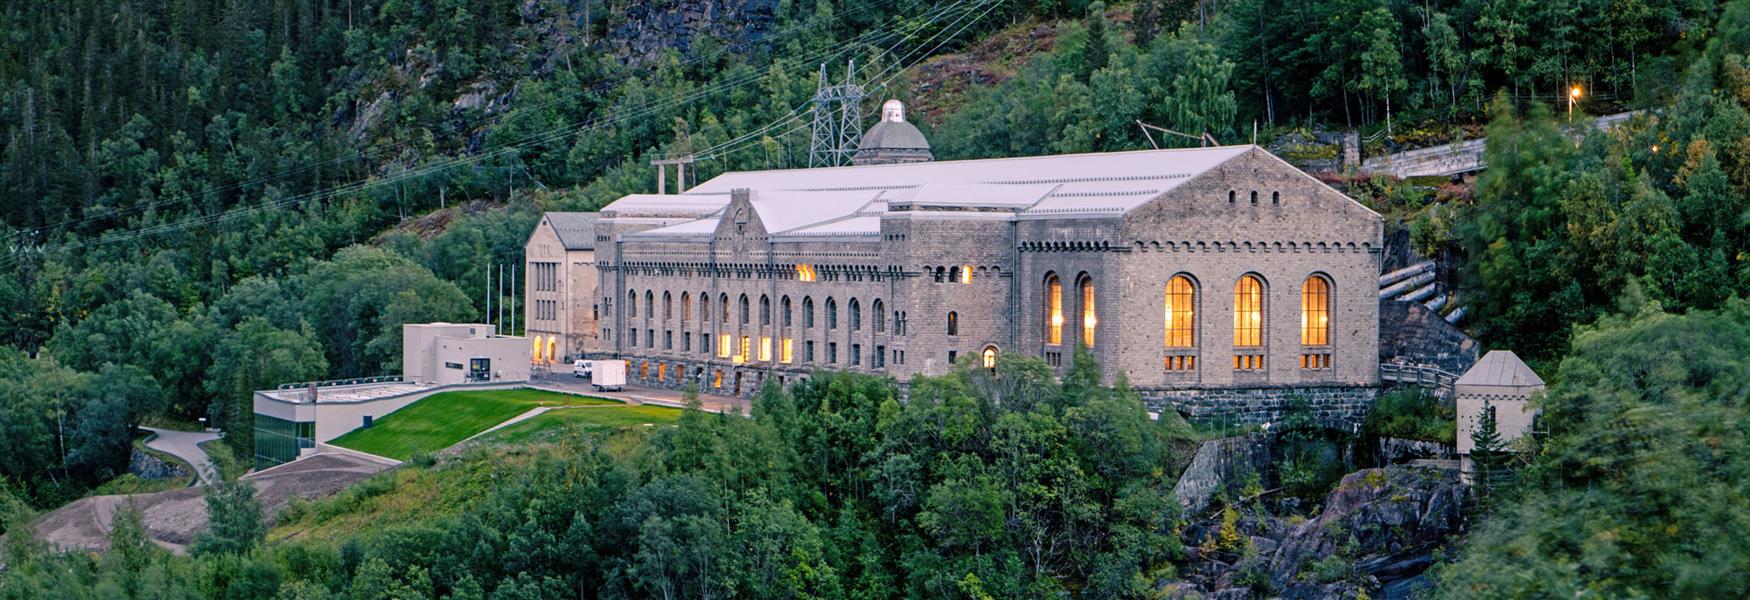 Norwegian Industrial workers museum Vemork at Rjukan